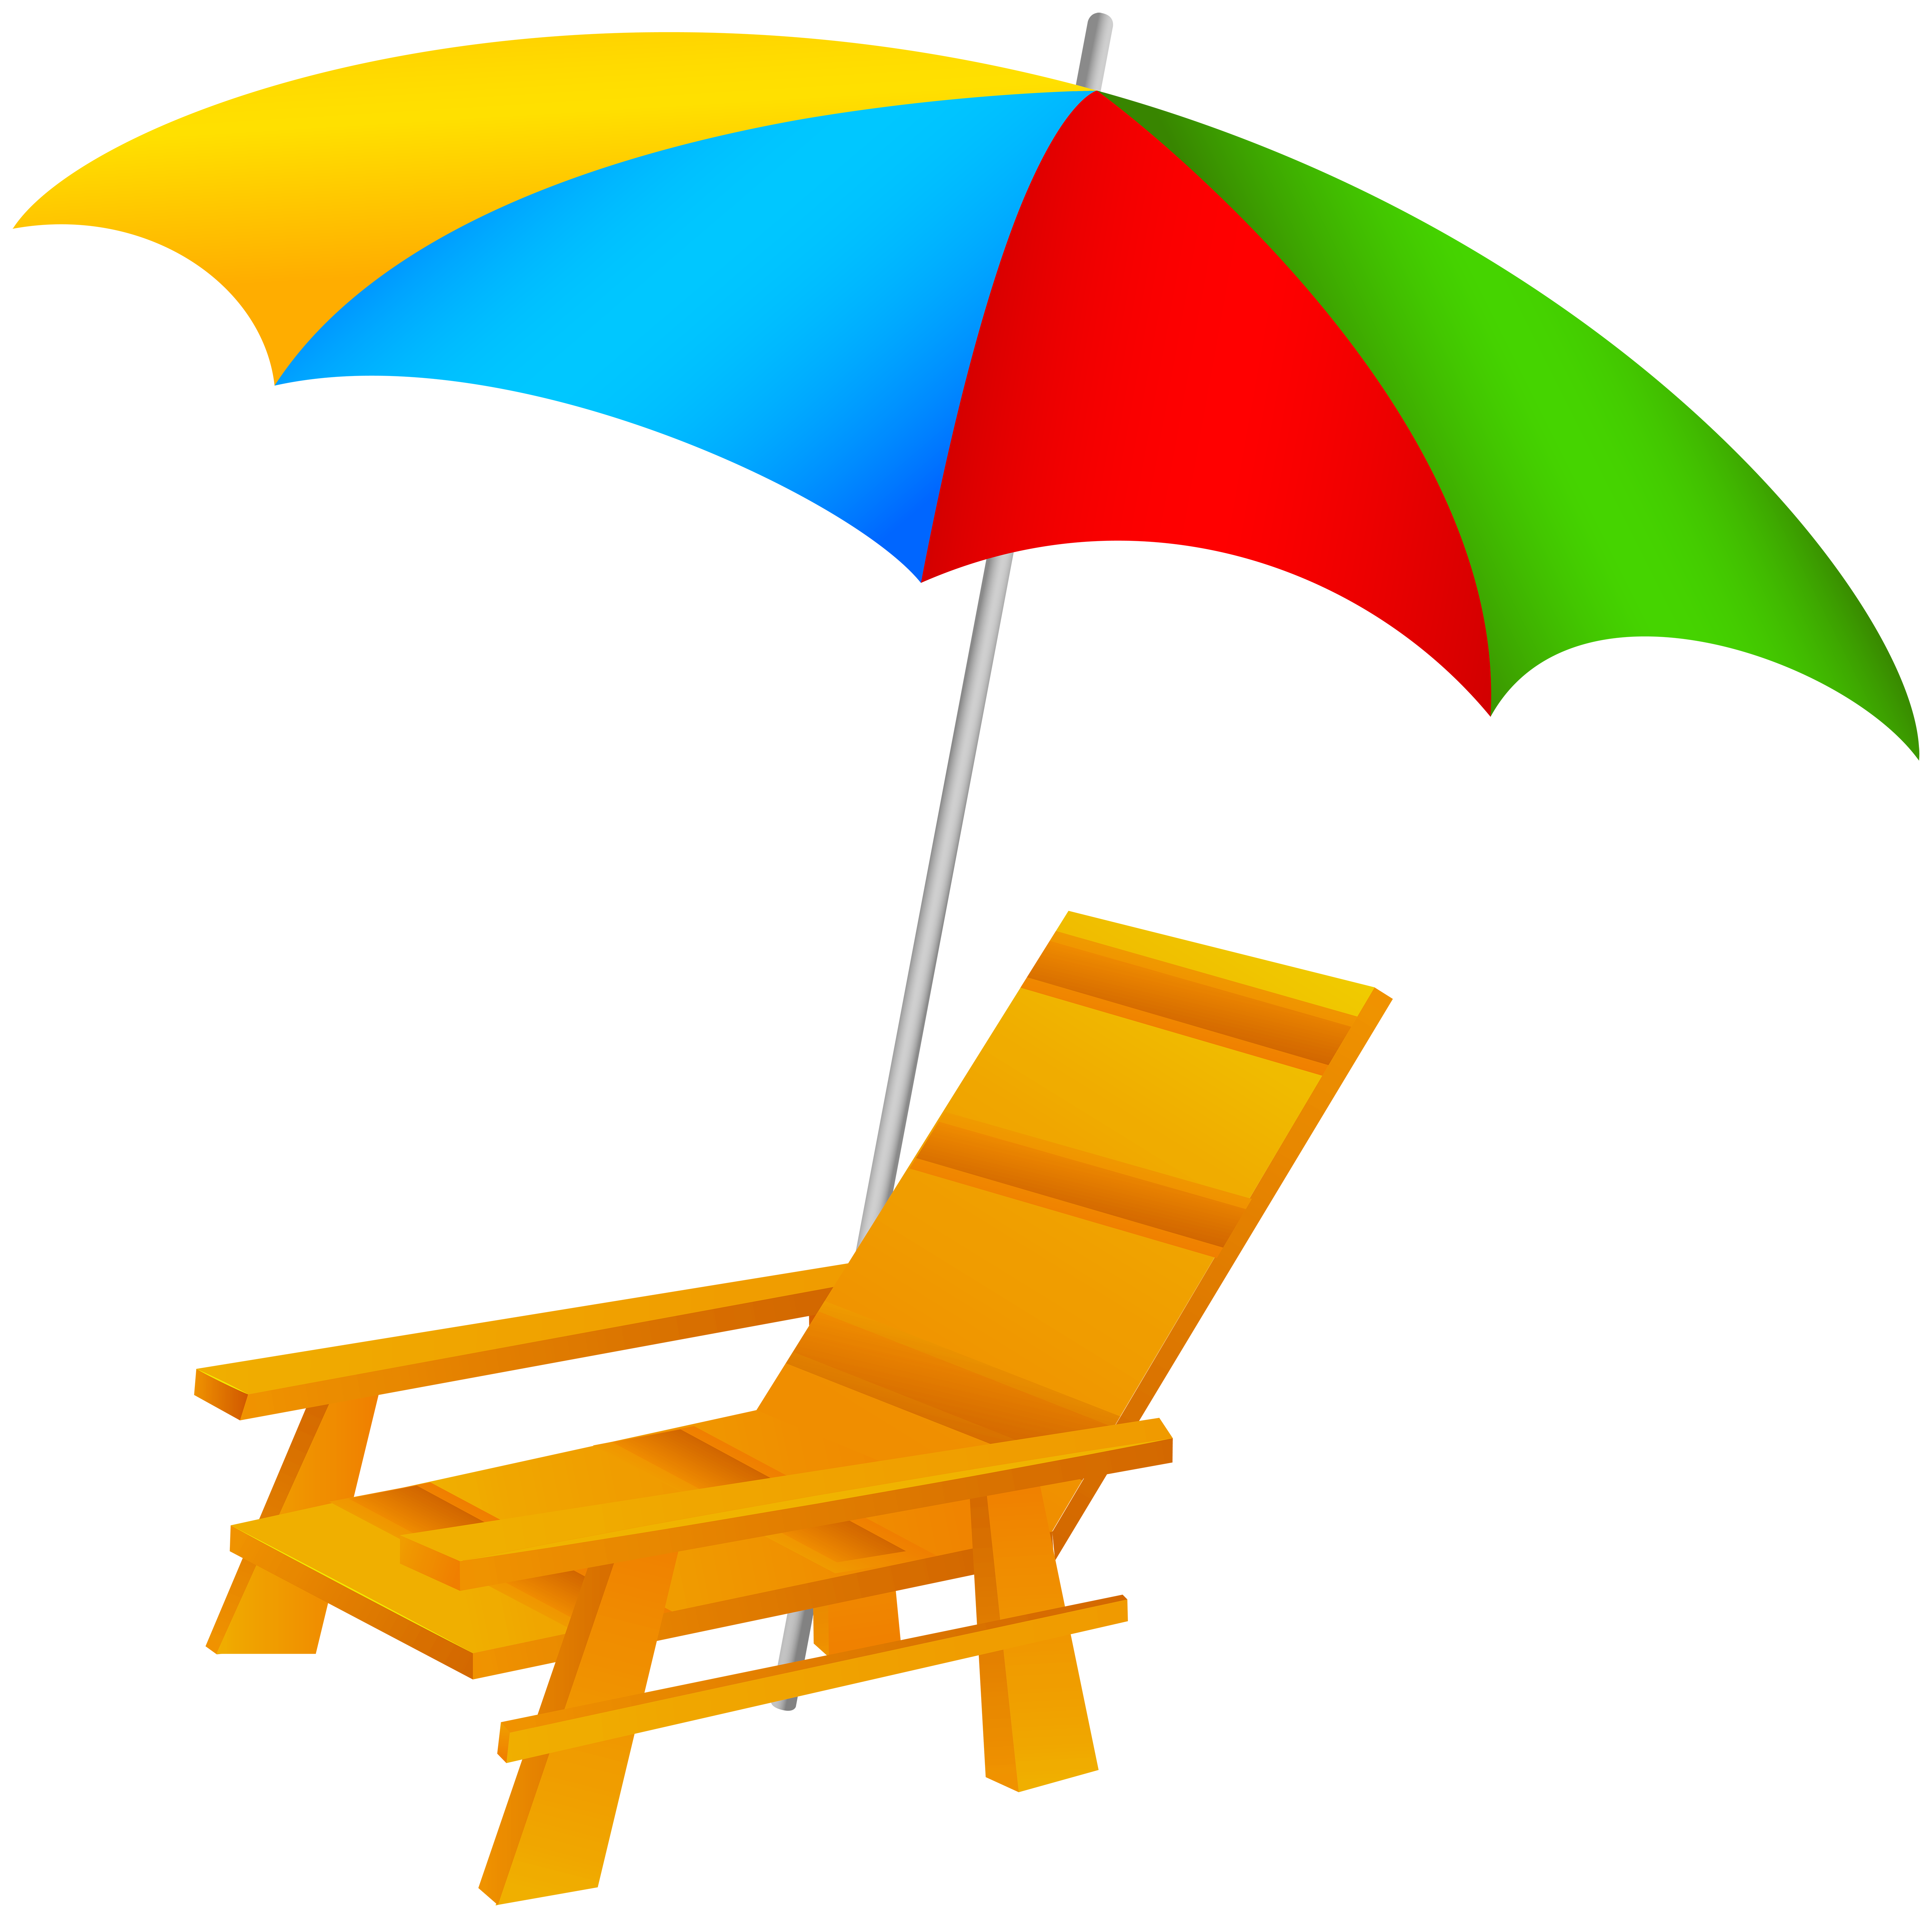 Beach umbrella and.